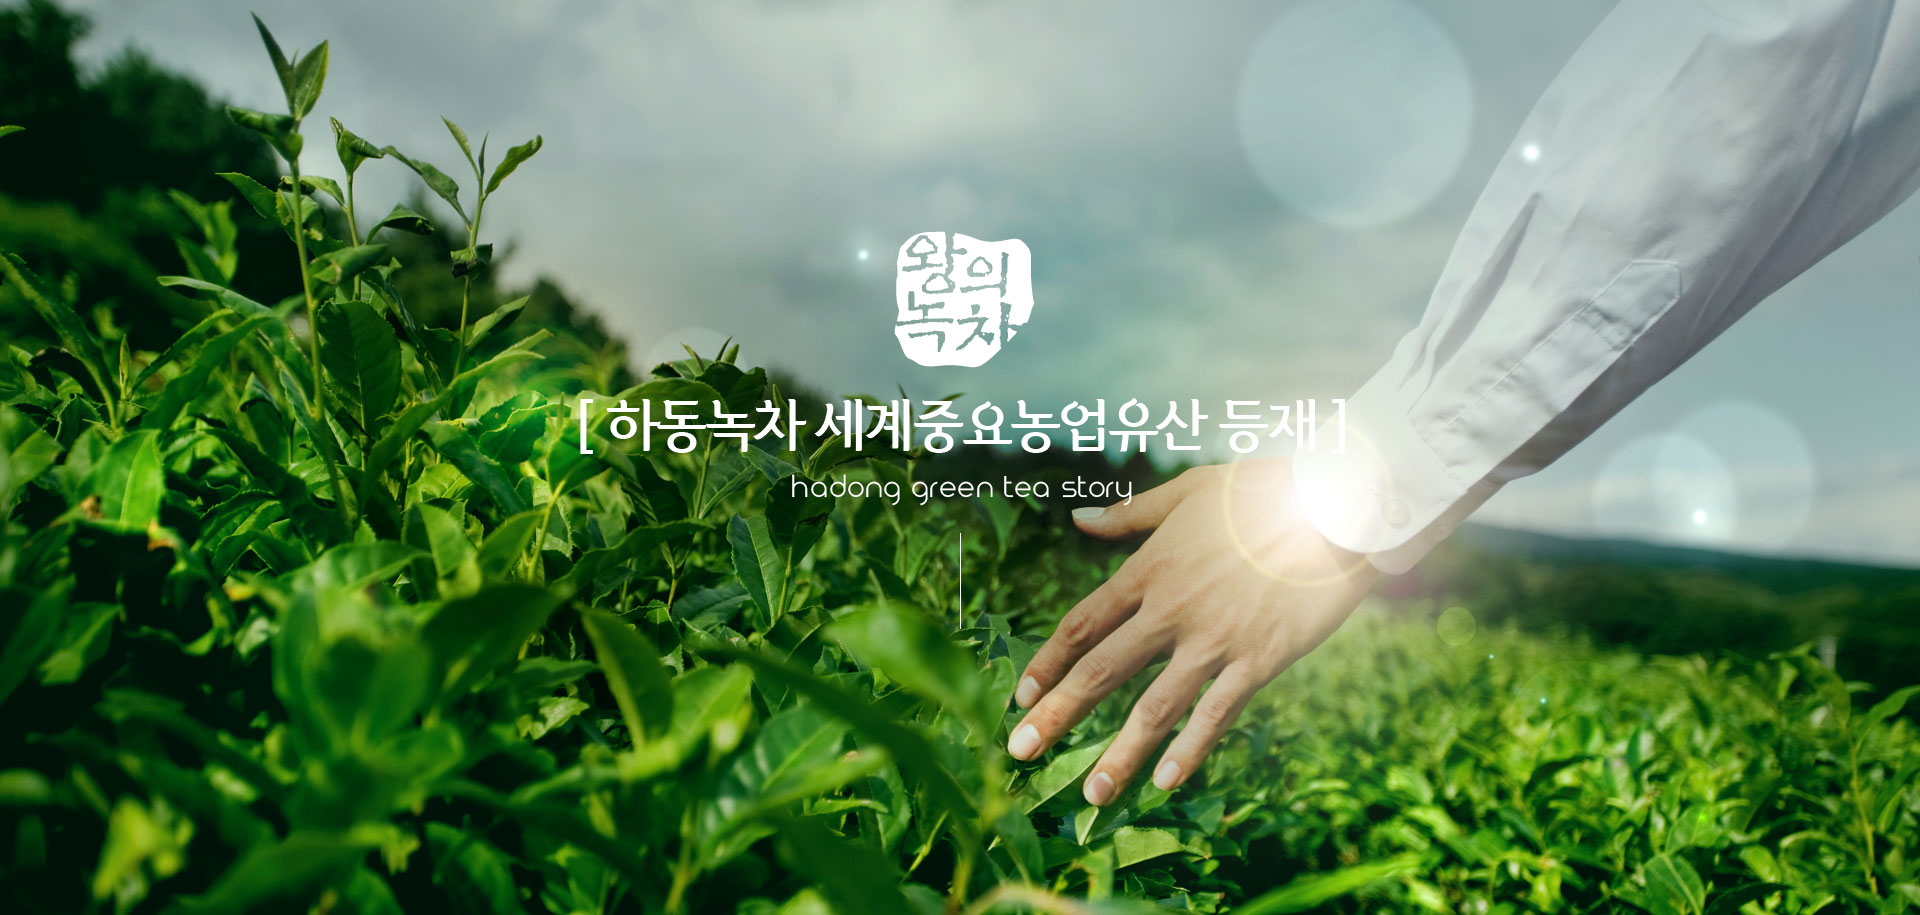 왕의녹차. [ 하동녹차 세계중요농업유산 등재 ] Hadong Green Tea Story